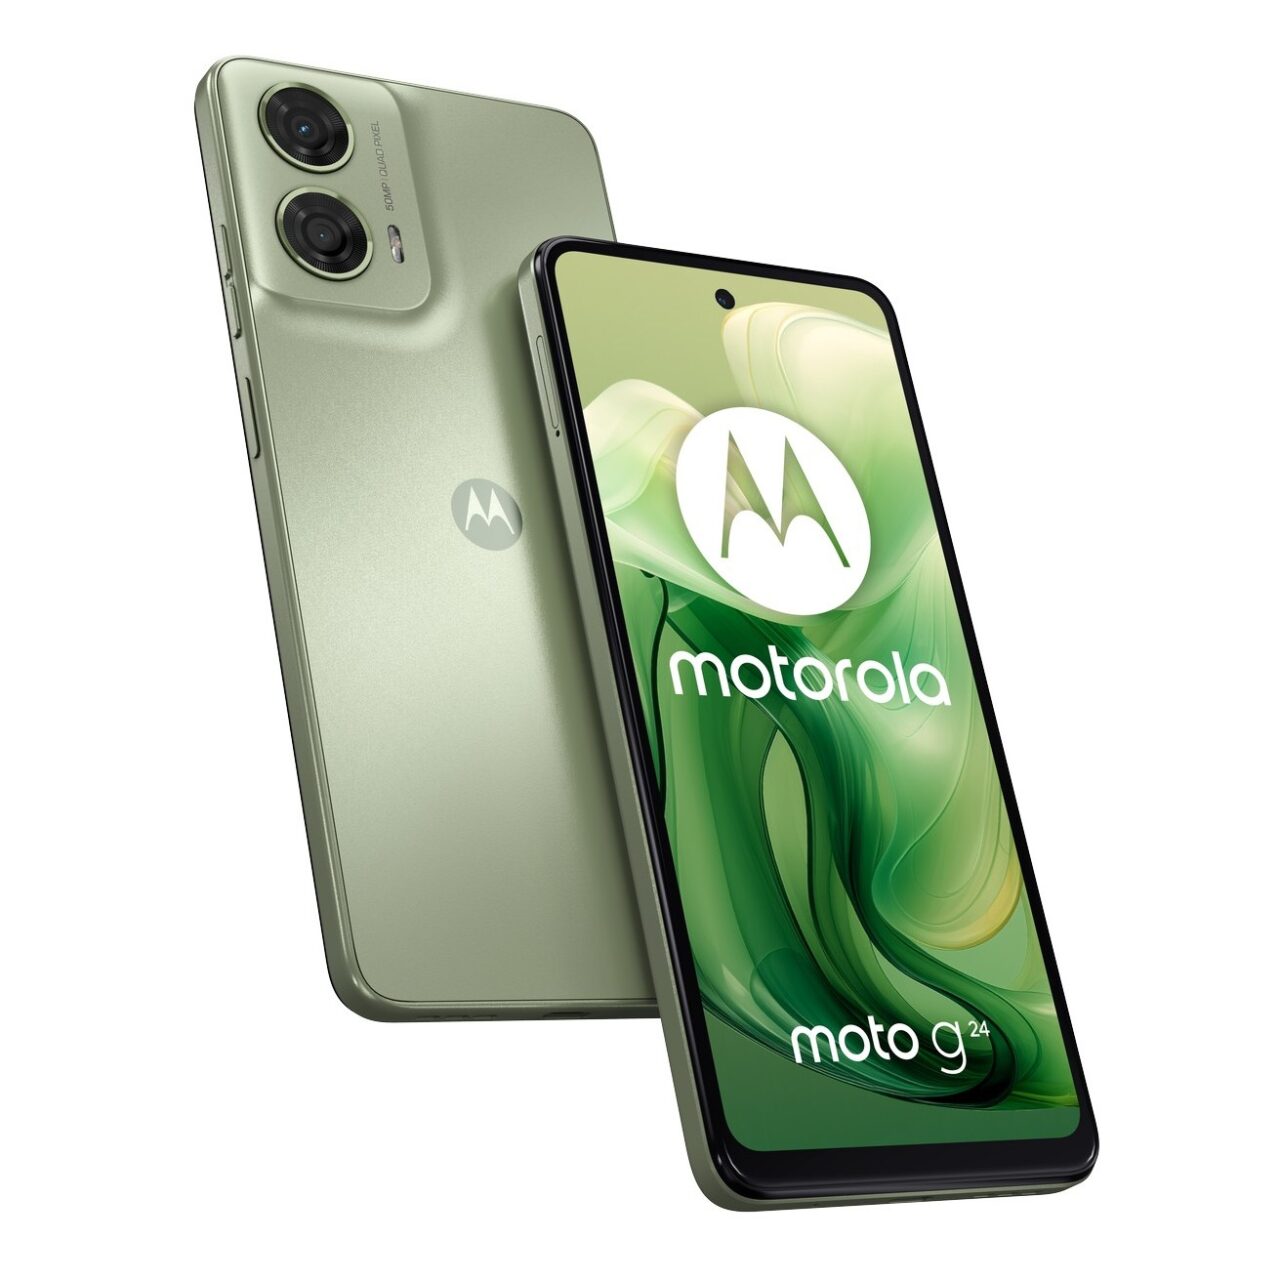 Smartfon Motorola moto g z podwójnym aparatem i logo Motoroli na tylnym panelu oraz ekranem z włączonym wyświetlaczem prezentującym logo Motoroli i nazwę modelu.